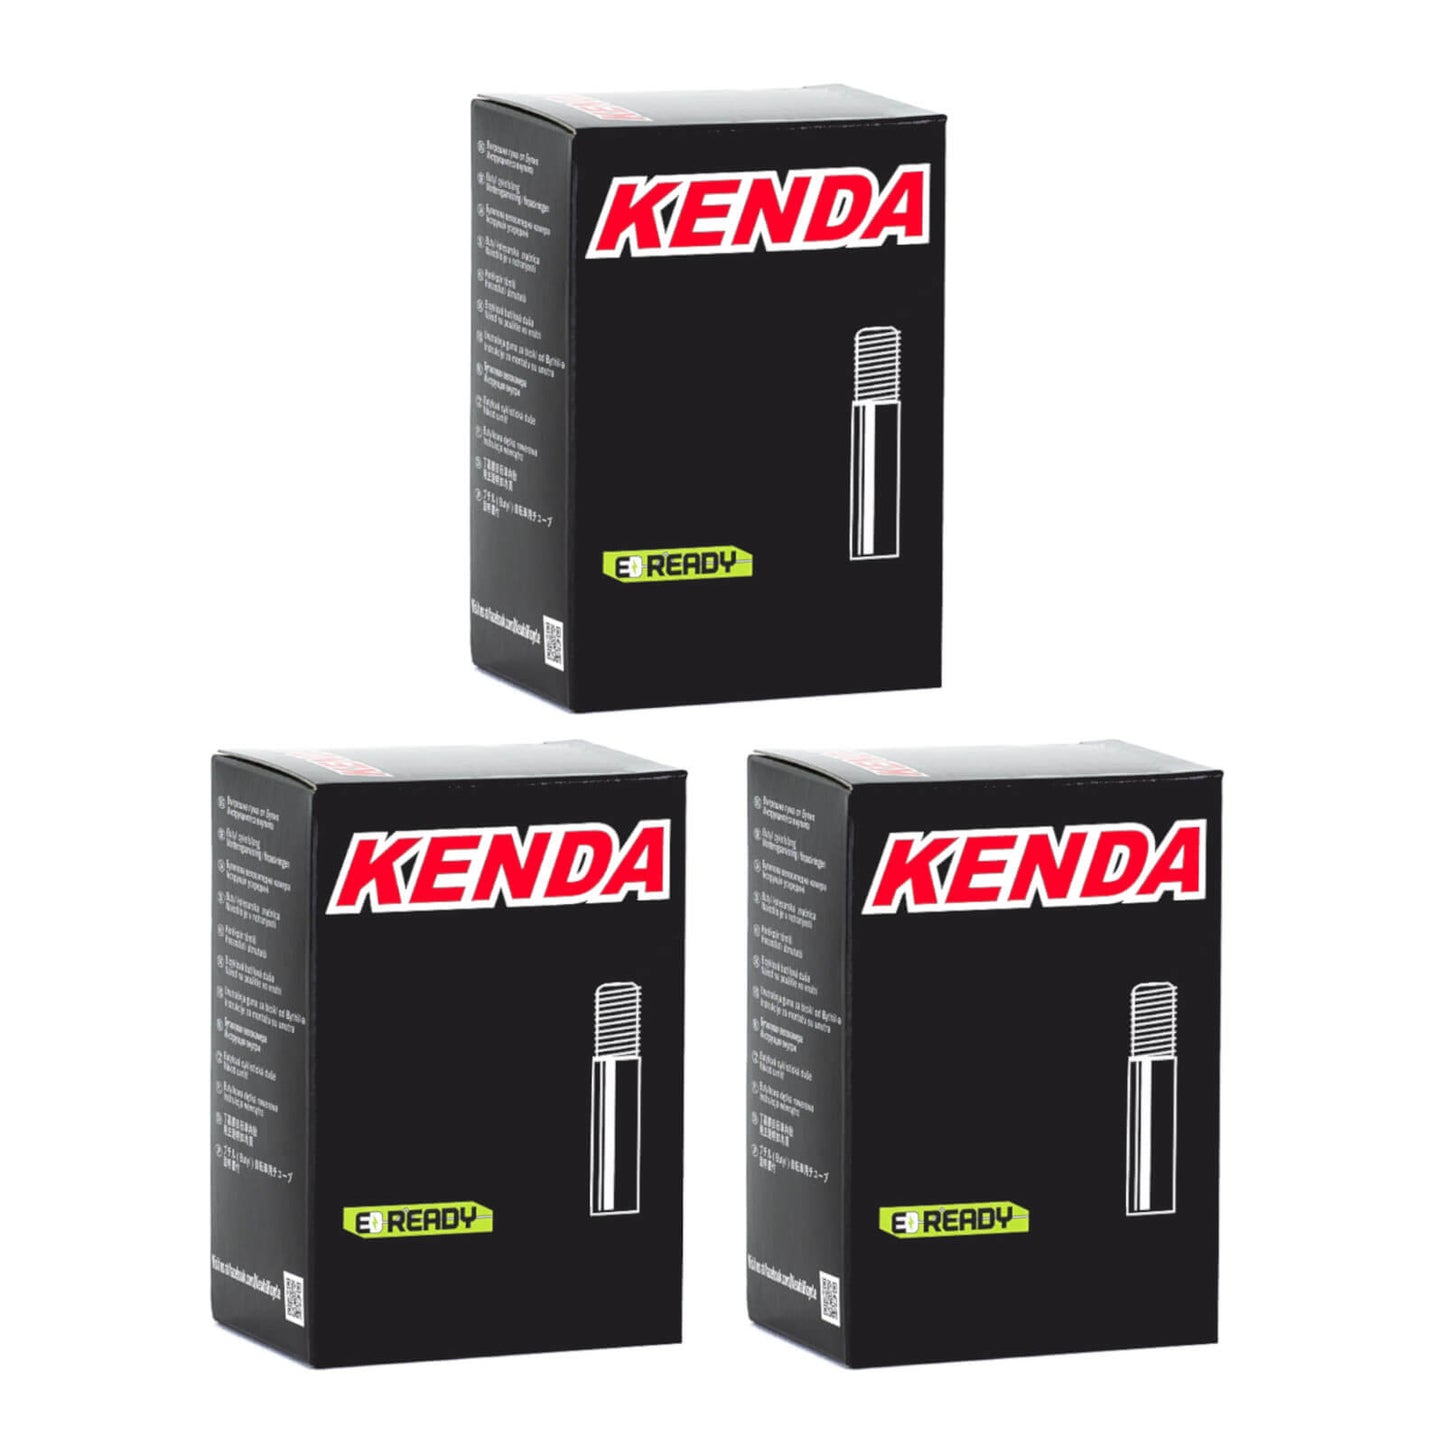 Kenda 27.5x2.4-2.8" 27.5 Inch Schrader Valve Bike Inner Tube Pack of 3